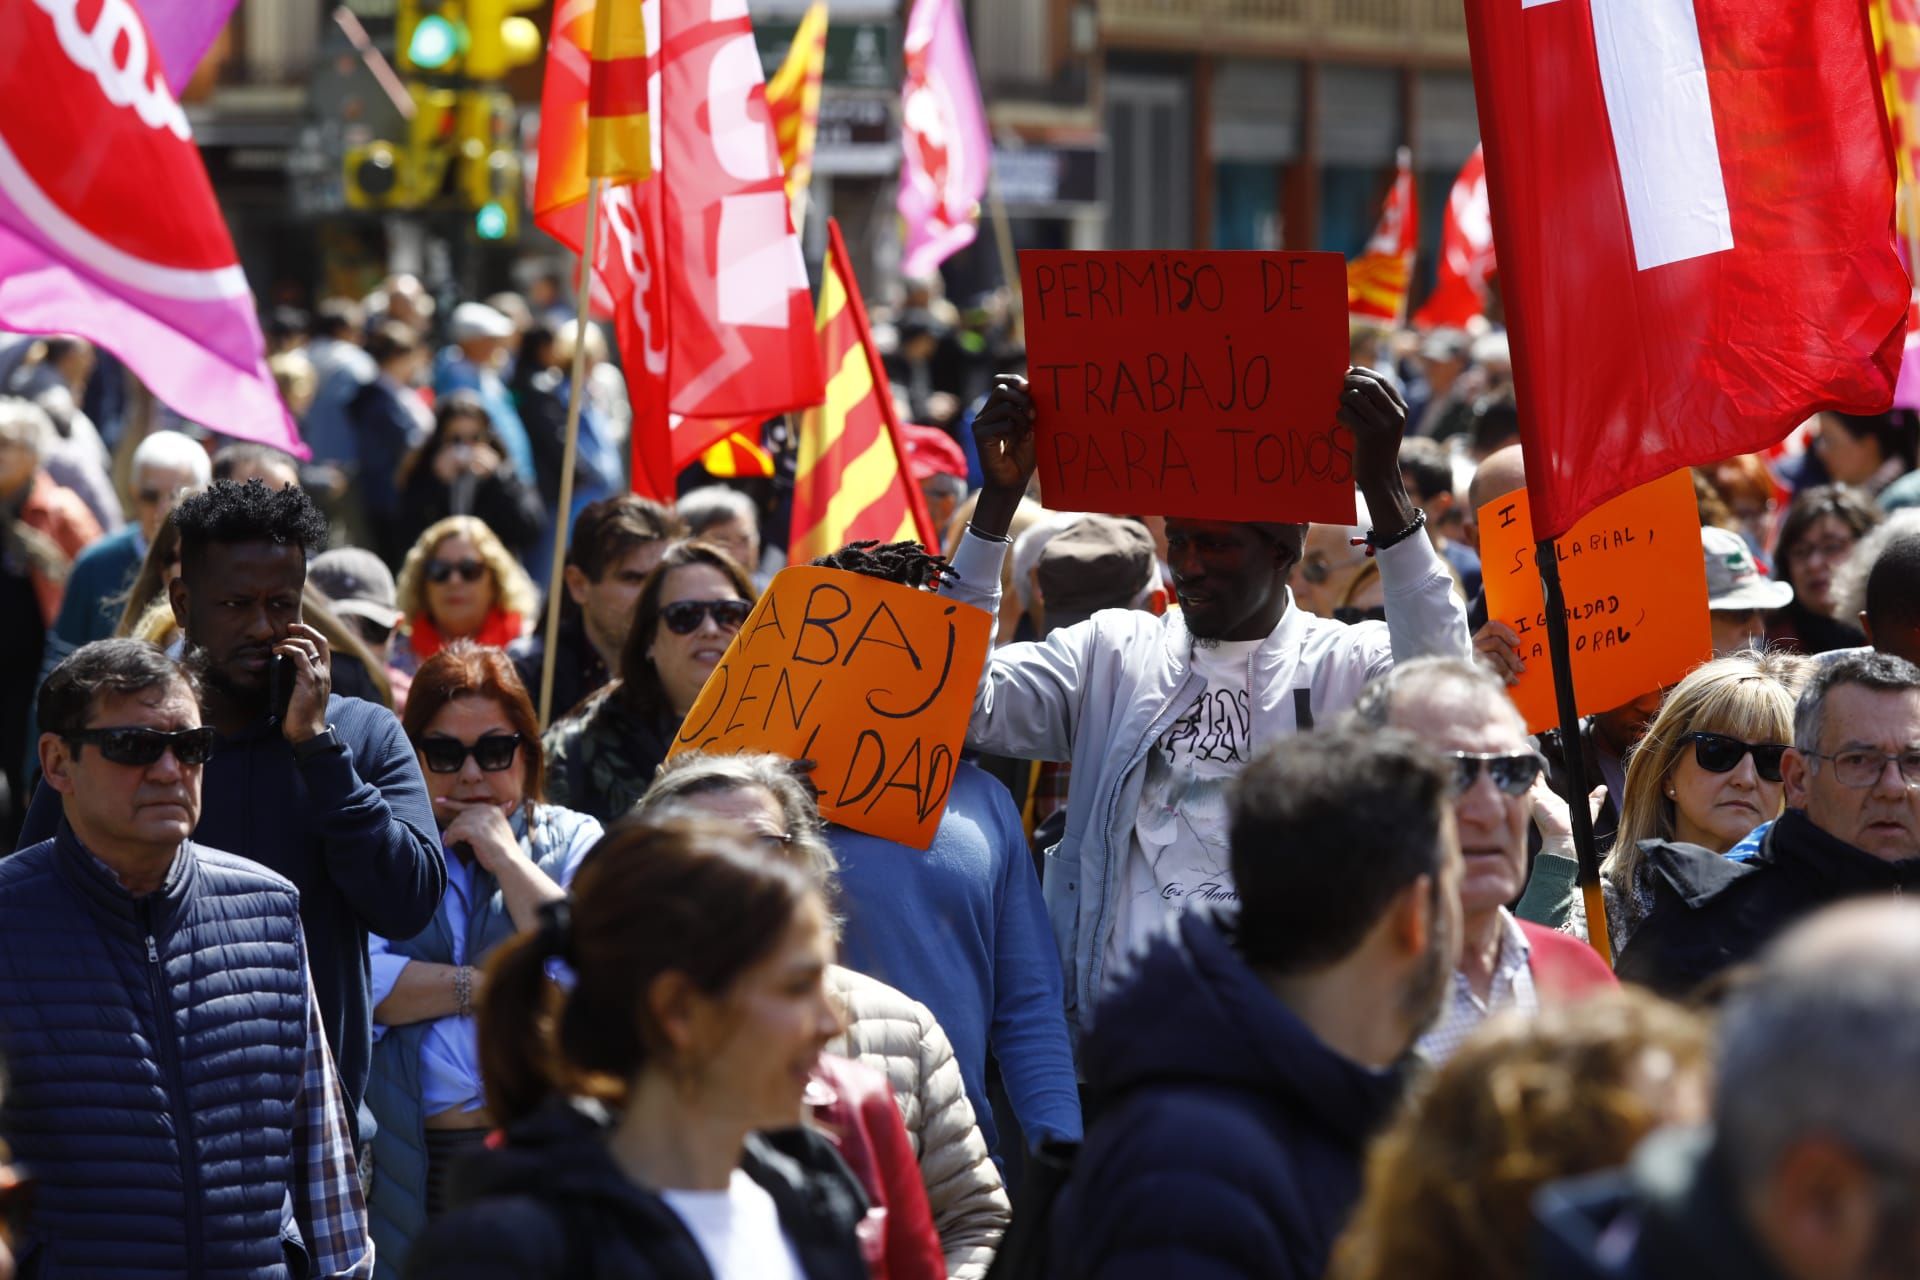 Manifestación del 1º de Mayo en Zaragoza